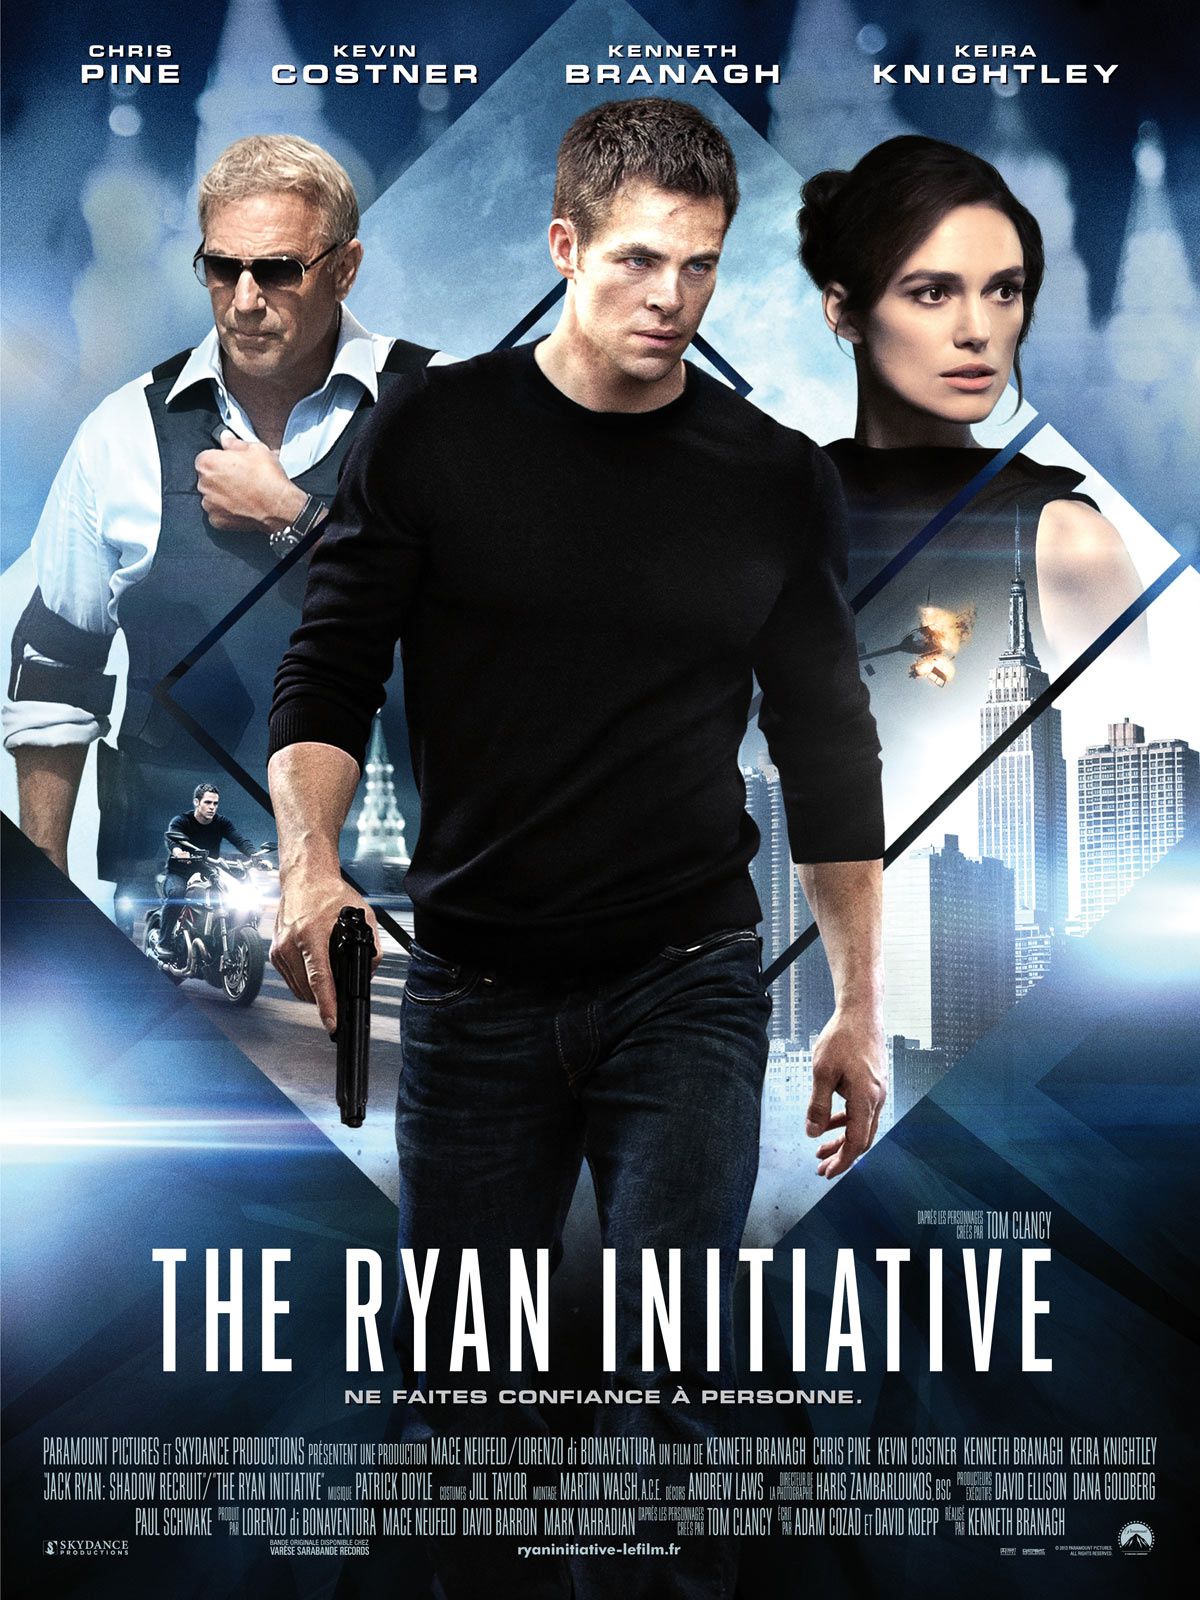 THE RYAN INITIATIVE (2 vidéos making-of) le 29 janvier 2014 au cinéma !